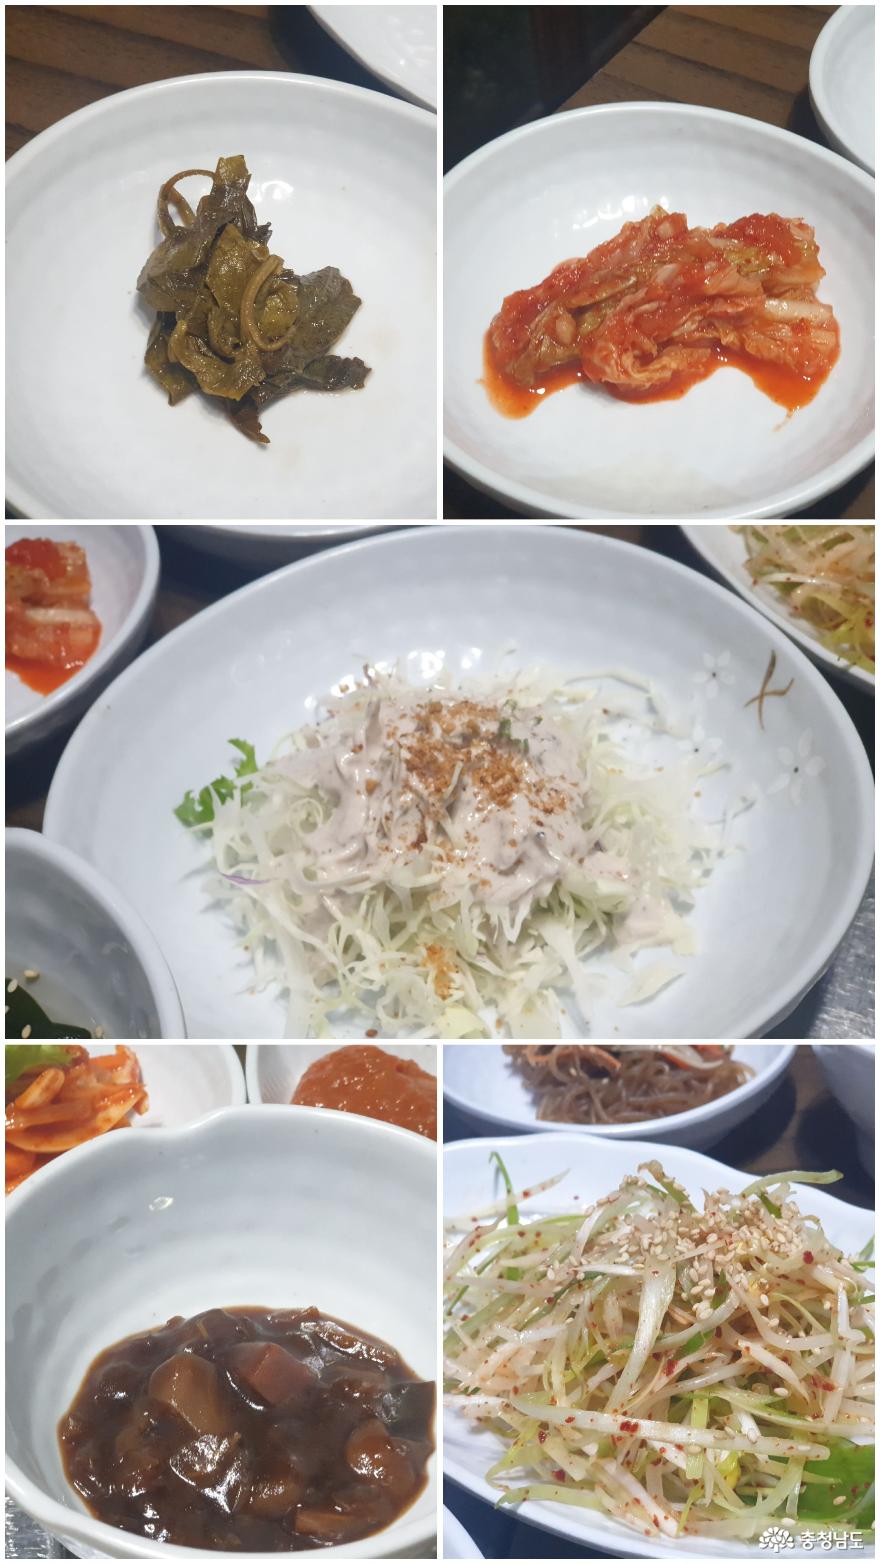 서산 모범음식점 생고기전문점 '궁생고기' 사진